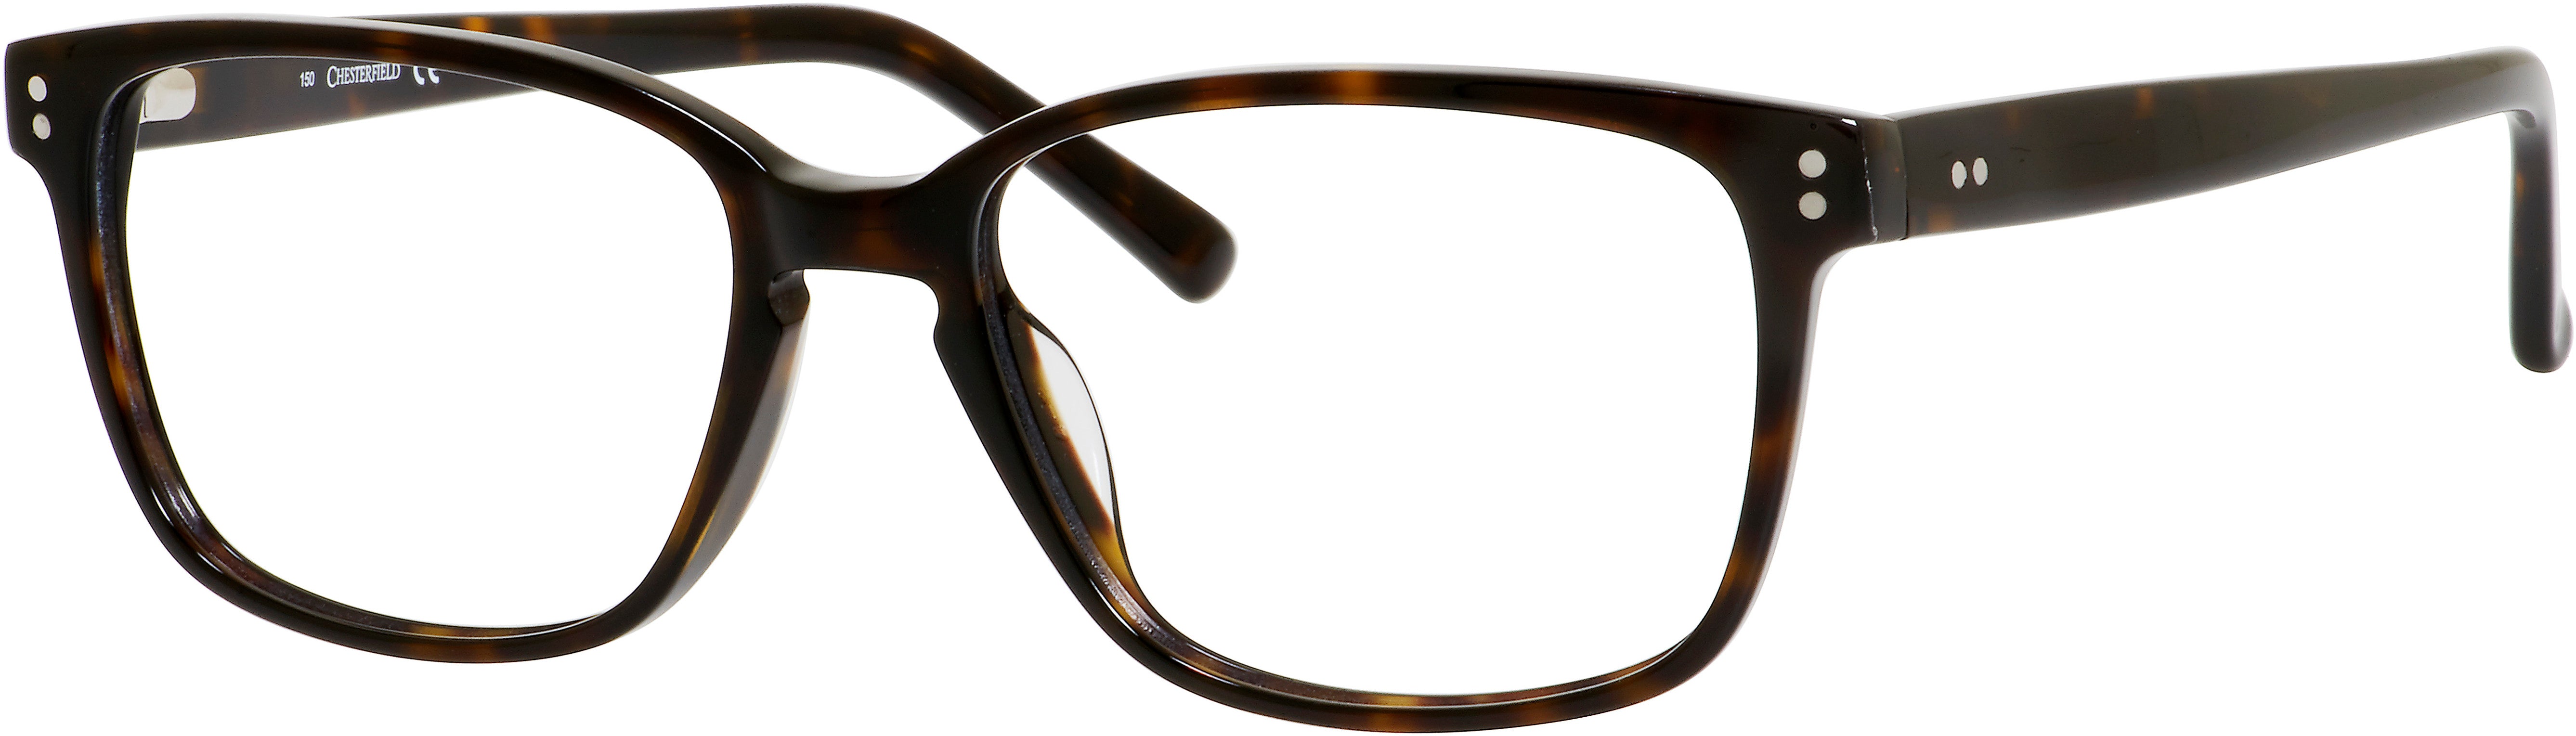  Chesterfield 28 XL Rectangular Eyeglasses 0086-0086  Dark Havana (00 Demo Lens)